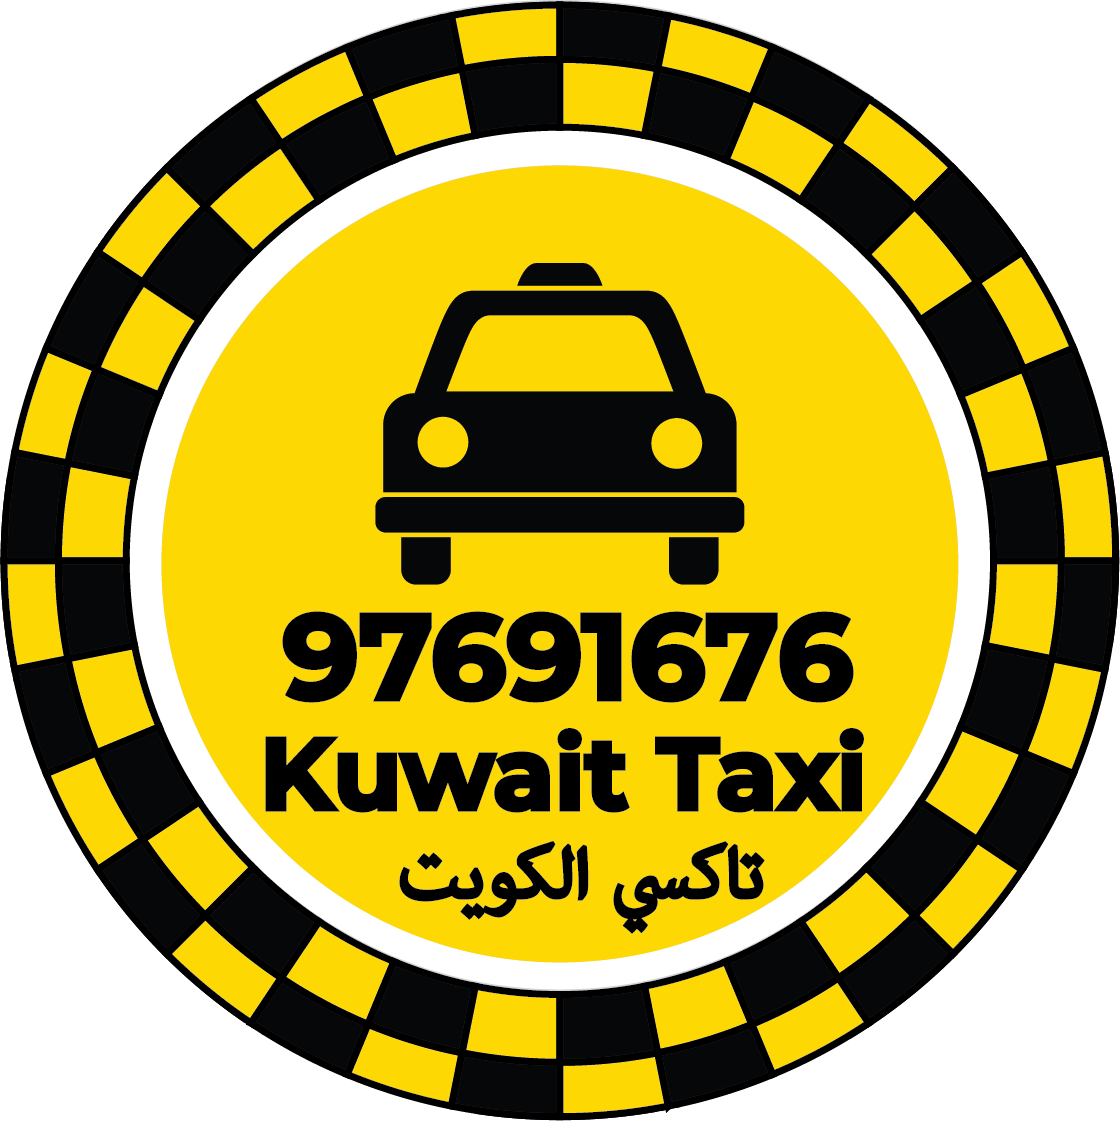 تاكسي العارضية 97691676 - رقم تاكسي العارضية الكويت